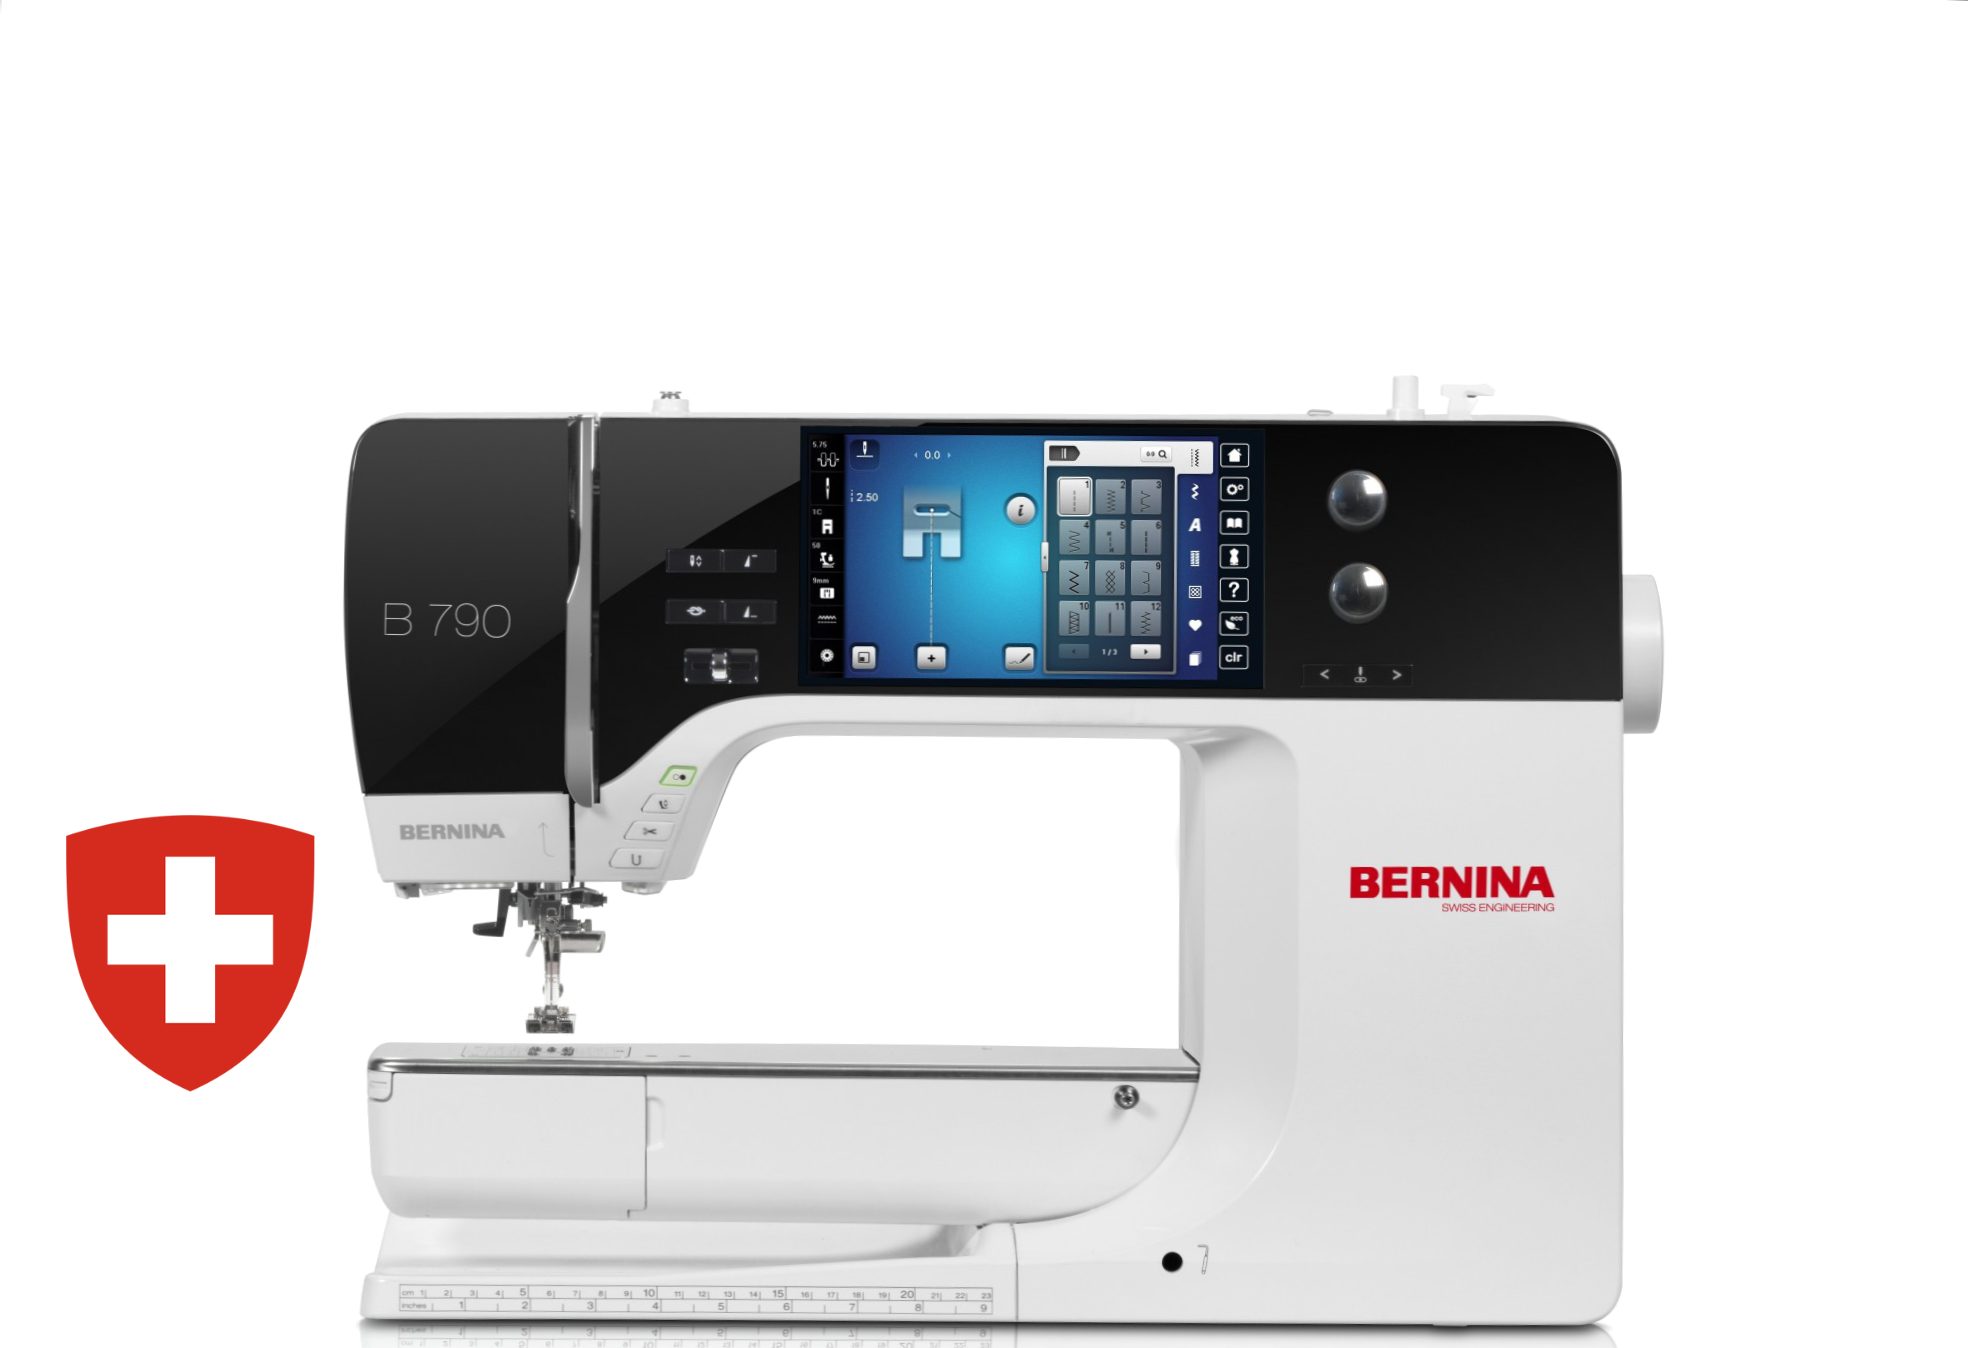 Kompiuterizuota siuvimo-siuvinėjimo mašina BERNINA 790 PLUS